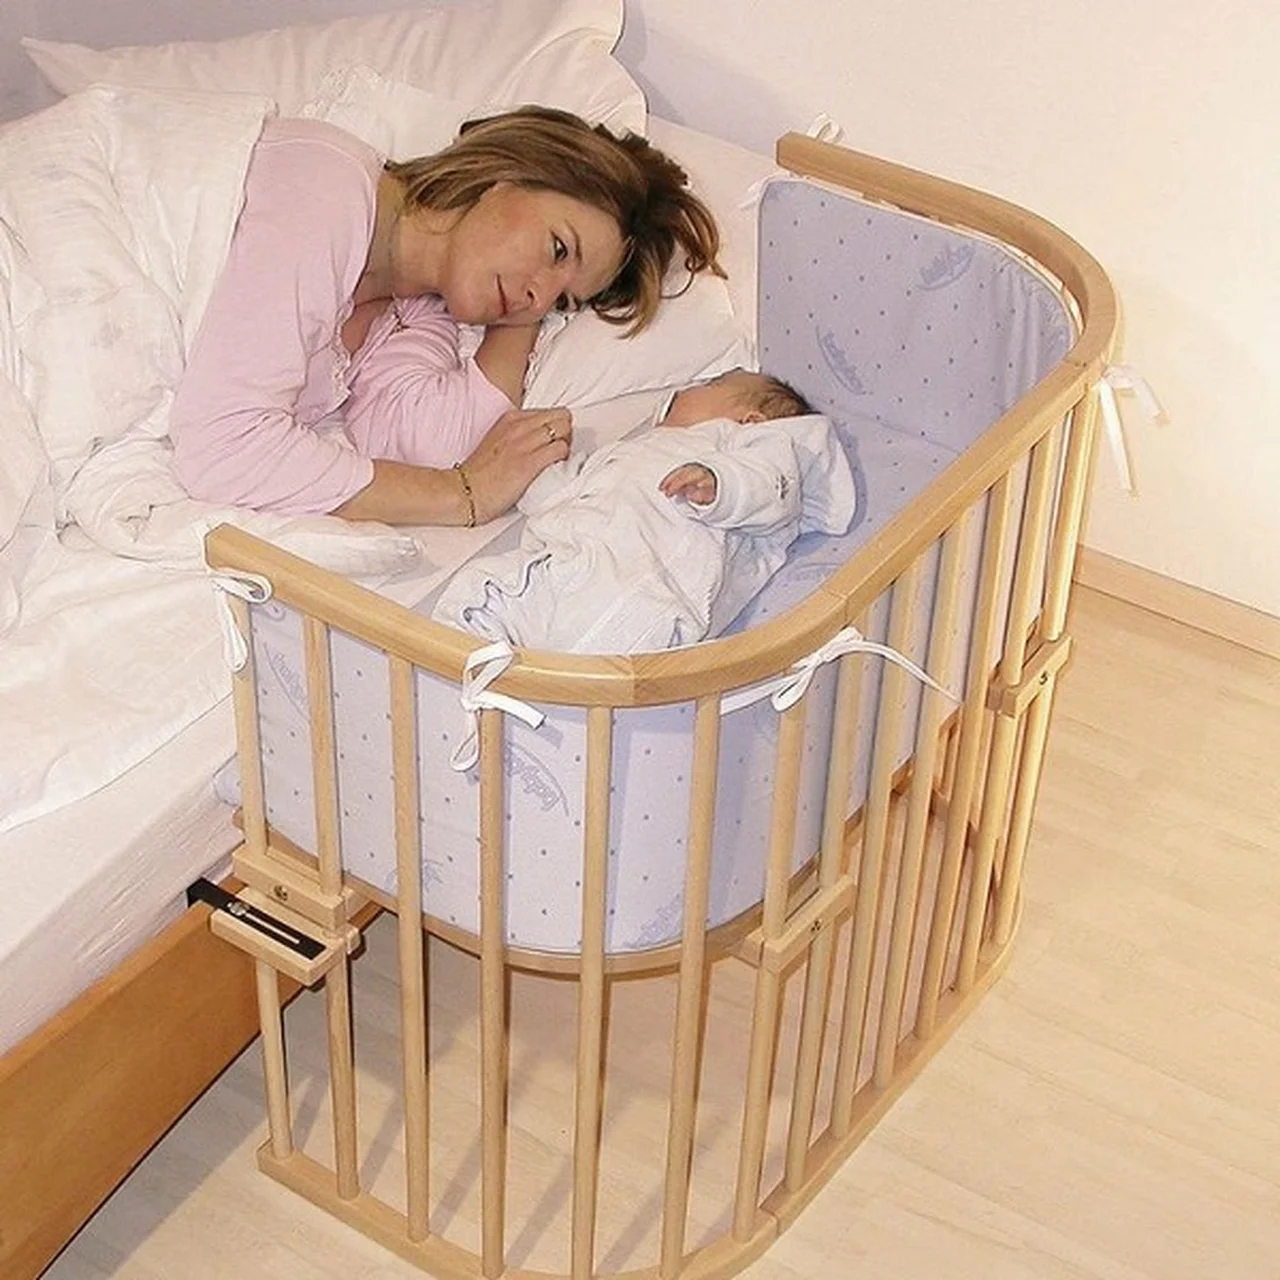 Łóżeczko dla dzieci, które można doczepić do łóżka rodziców